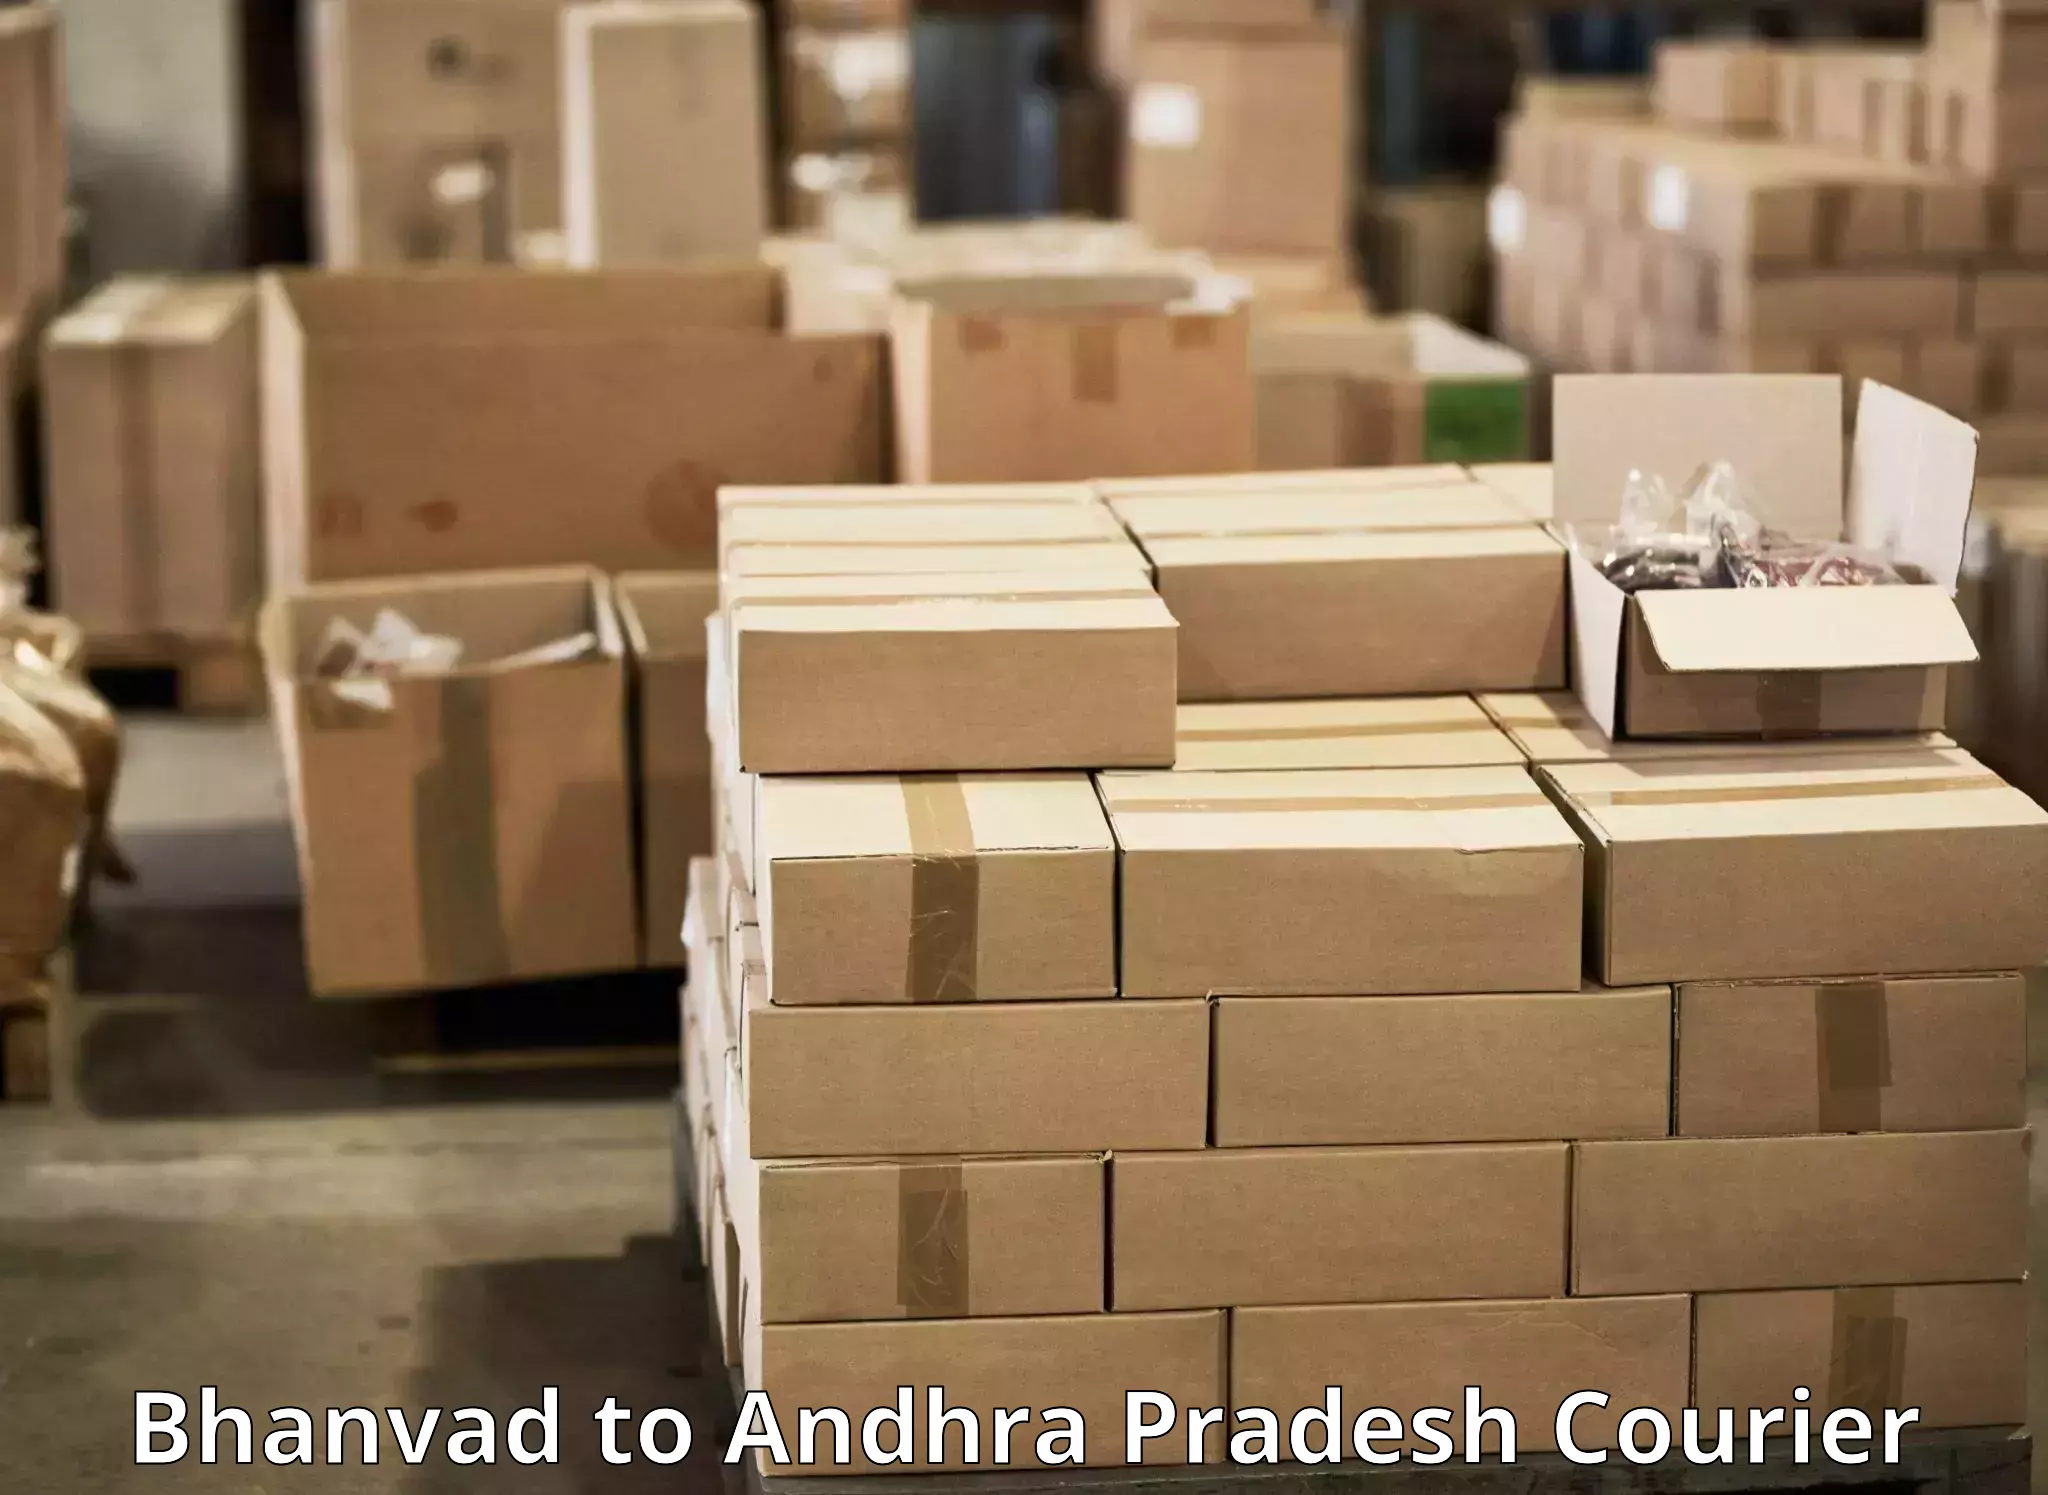 Express logistics providers Bhanvad to Konduru